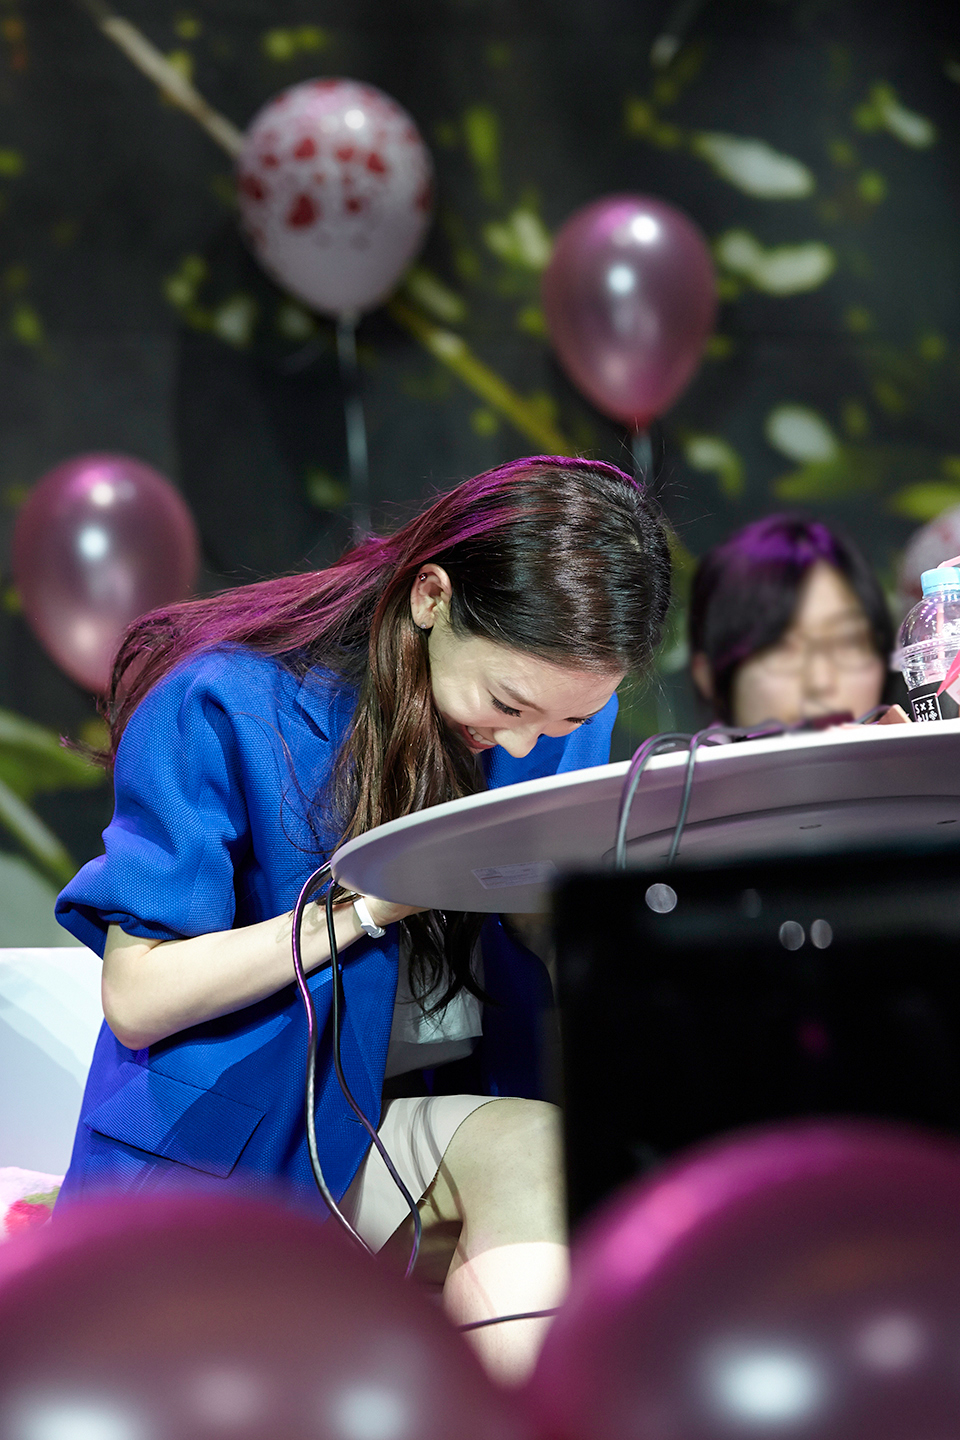 [PIC][08-03-2015]Hình ảnh mới nhất từ "Taeyeon 태연 Birthday Party" của TaeYeon vào tối nay KeLIJZPEEI